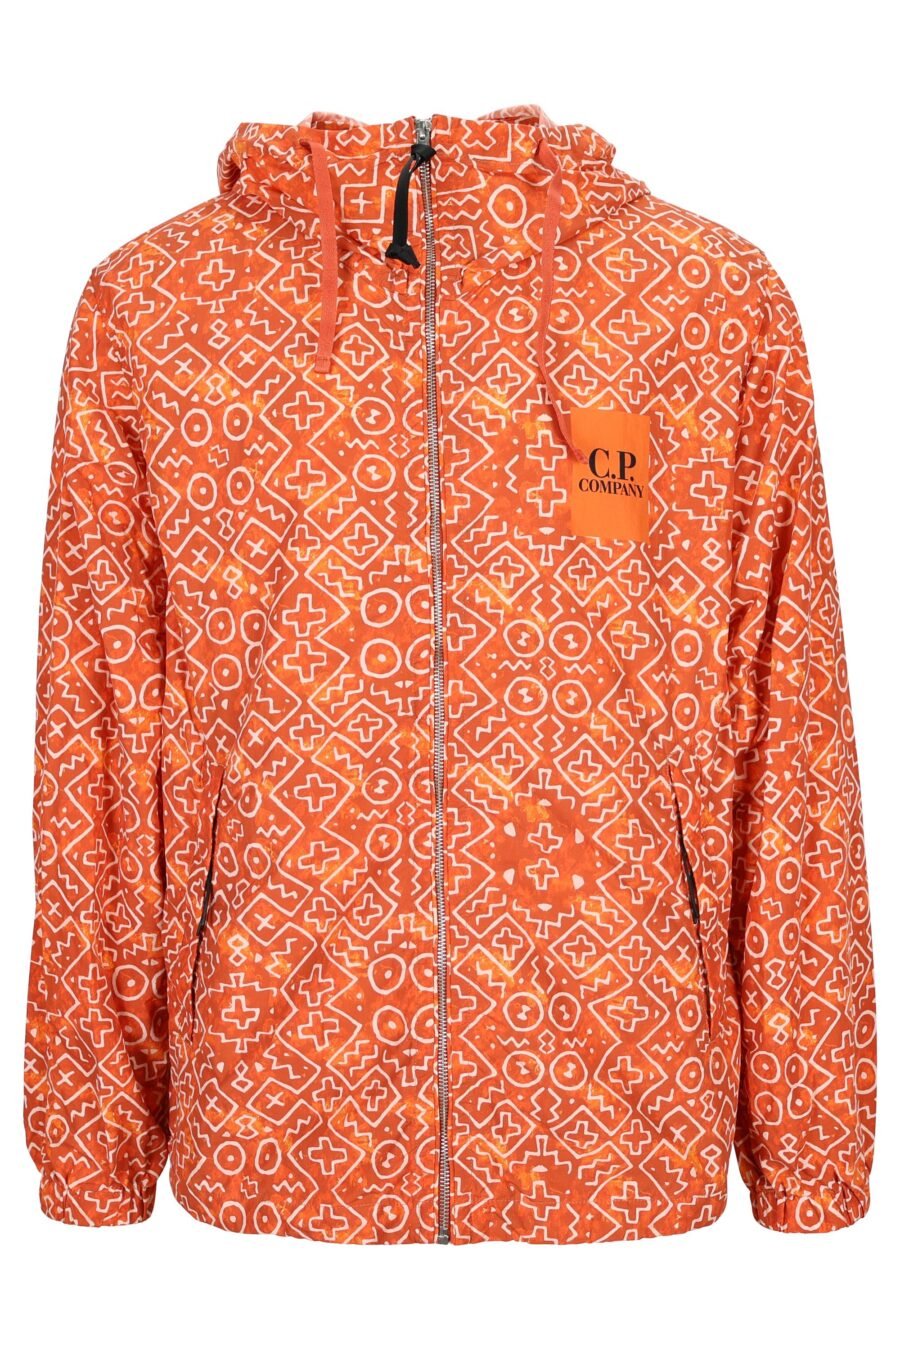 Reddish orange jacket with logo - 7620943777796